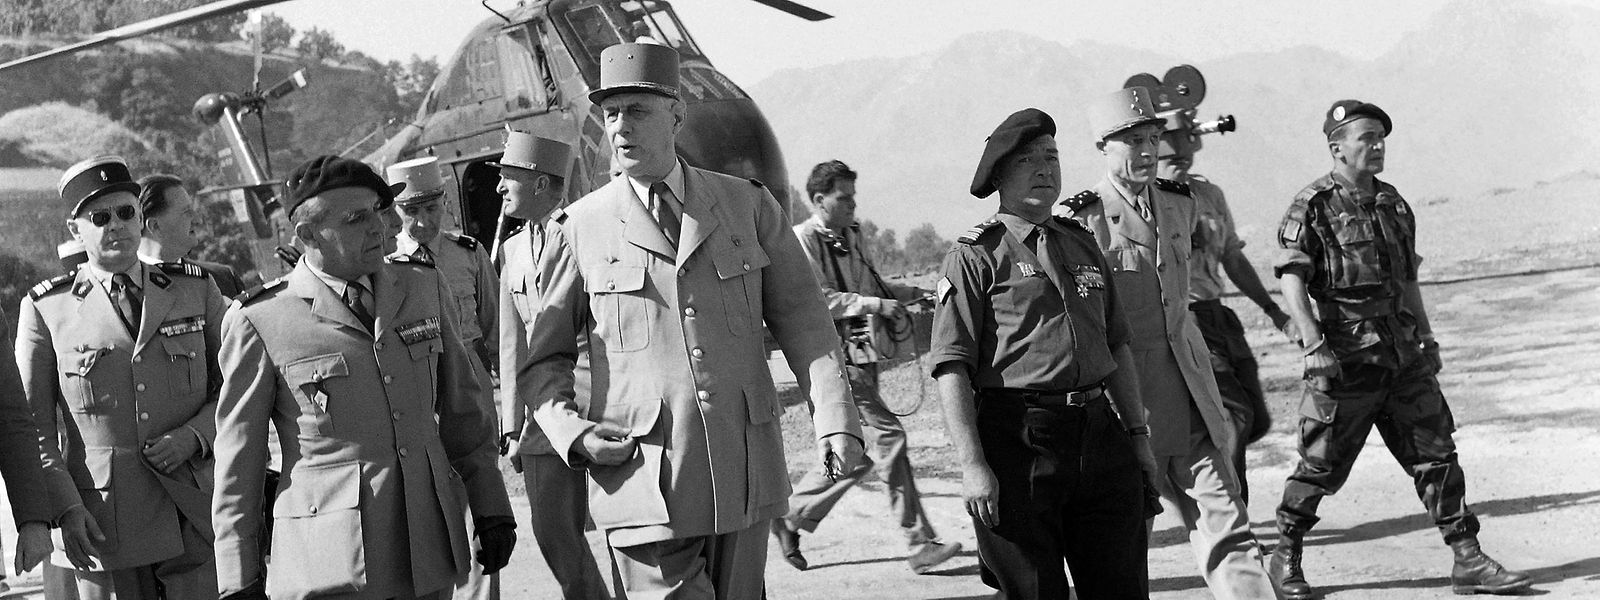 Le 2 juillet 1958, le président du Conseil, le général Charles de Gaulle (m.), arrive au Fort National de Kabylie, pendant un tour d'inspection de l'armée française en Algérie.